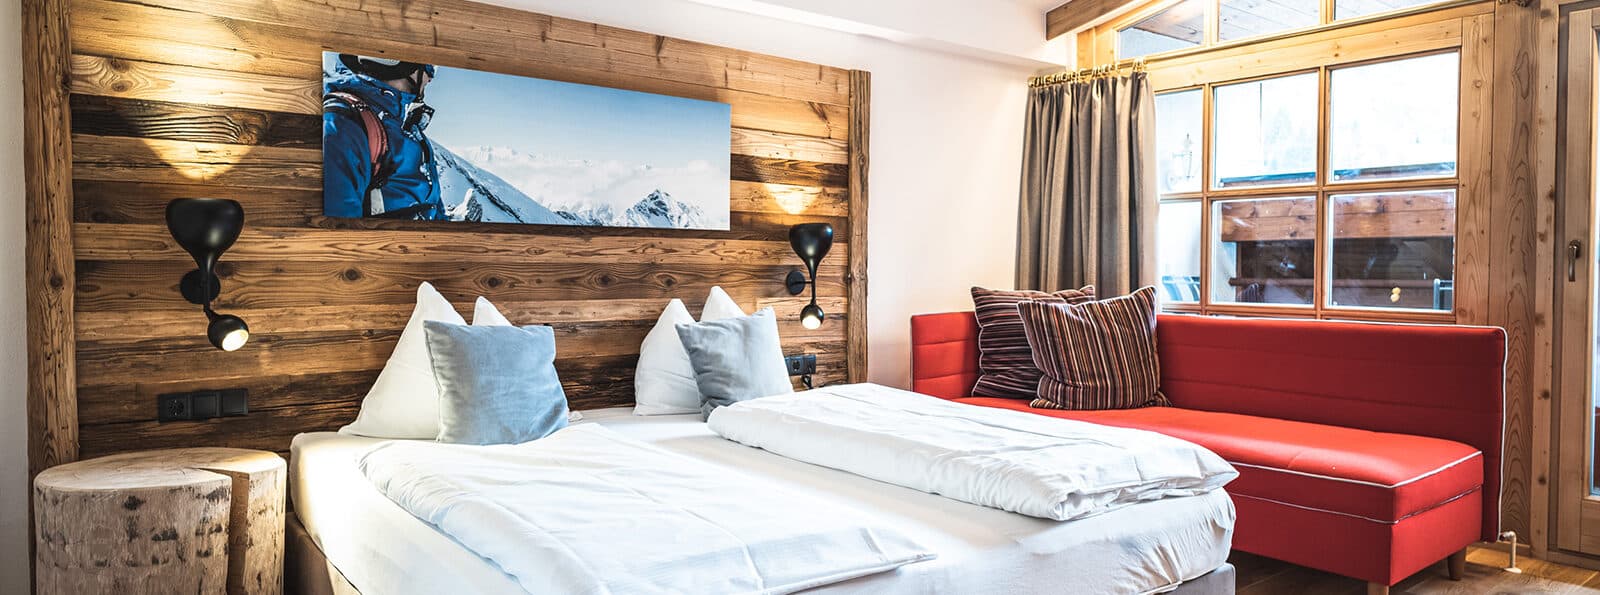 Alpine style room